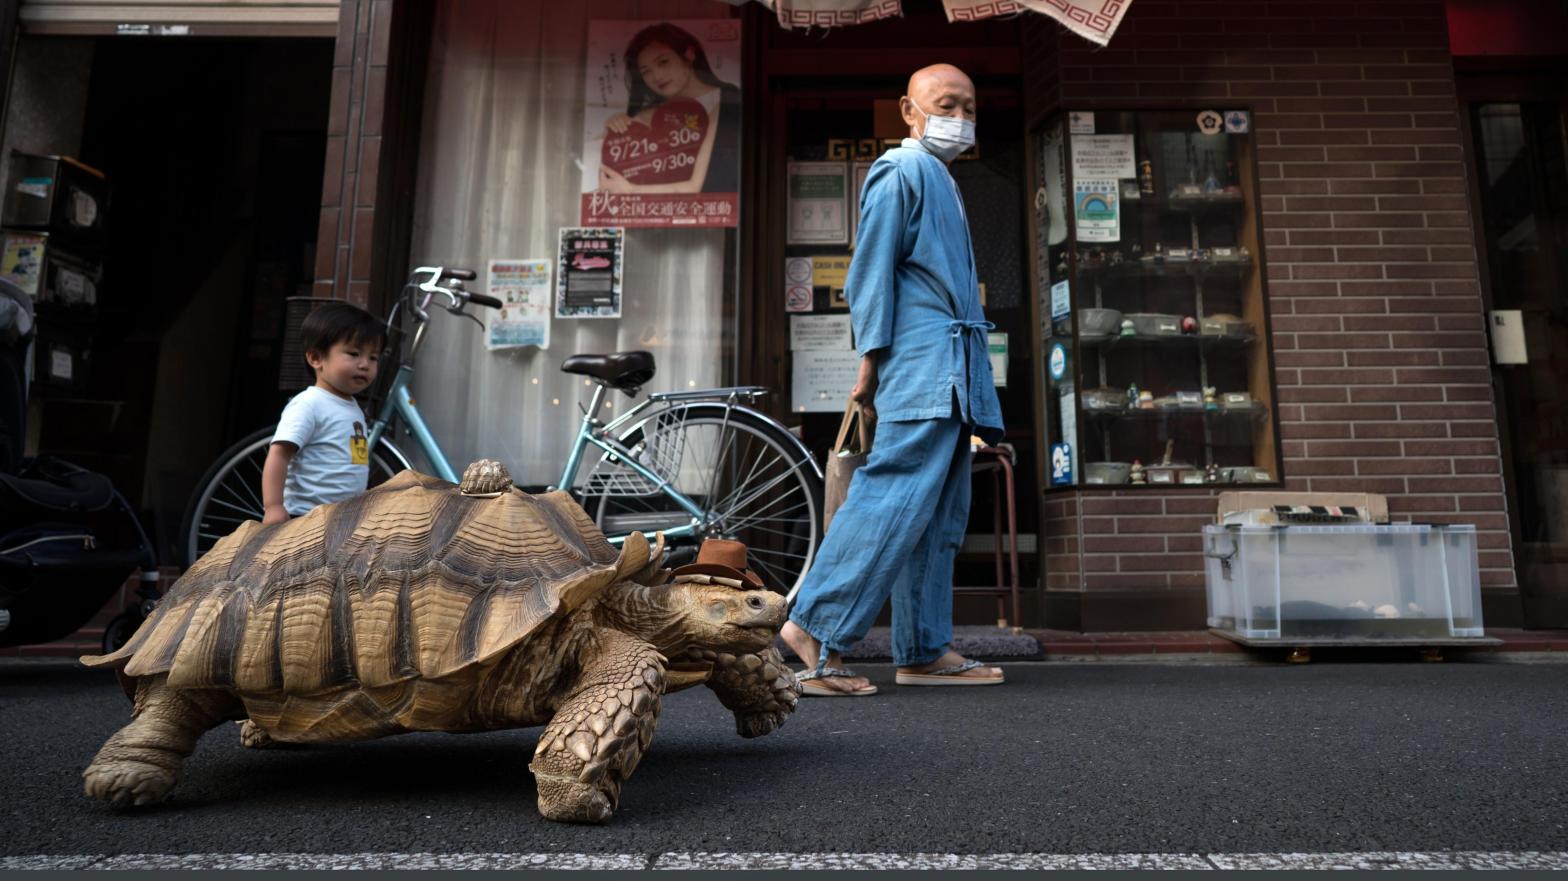 Photo: Tomohiro Ohsumi, Getty Images